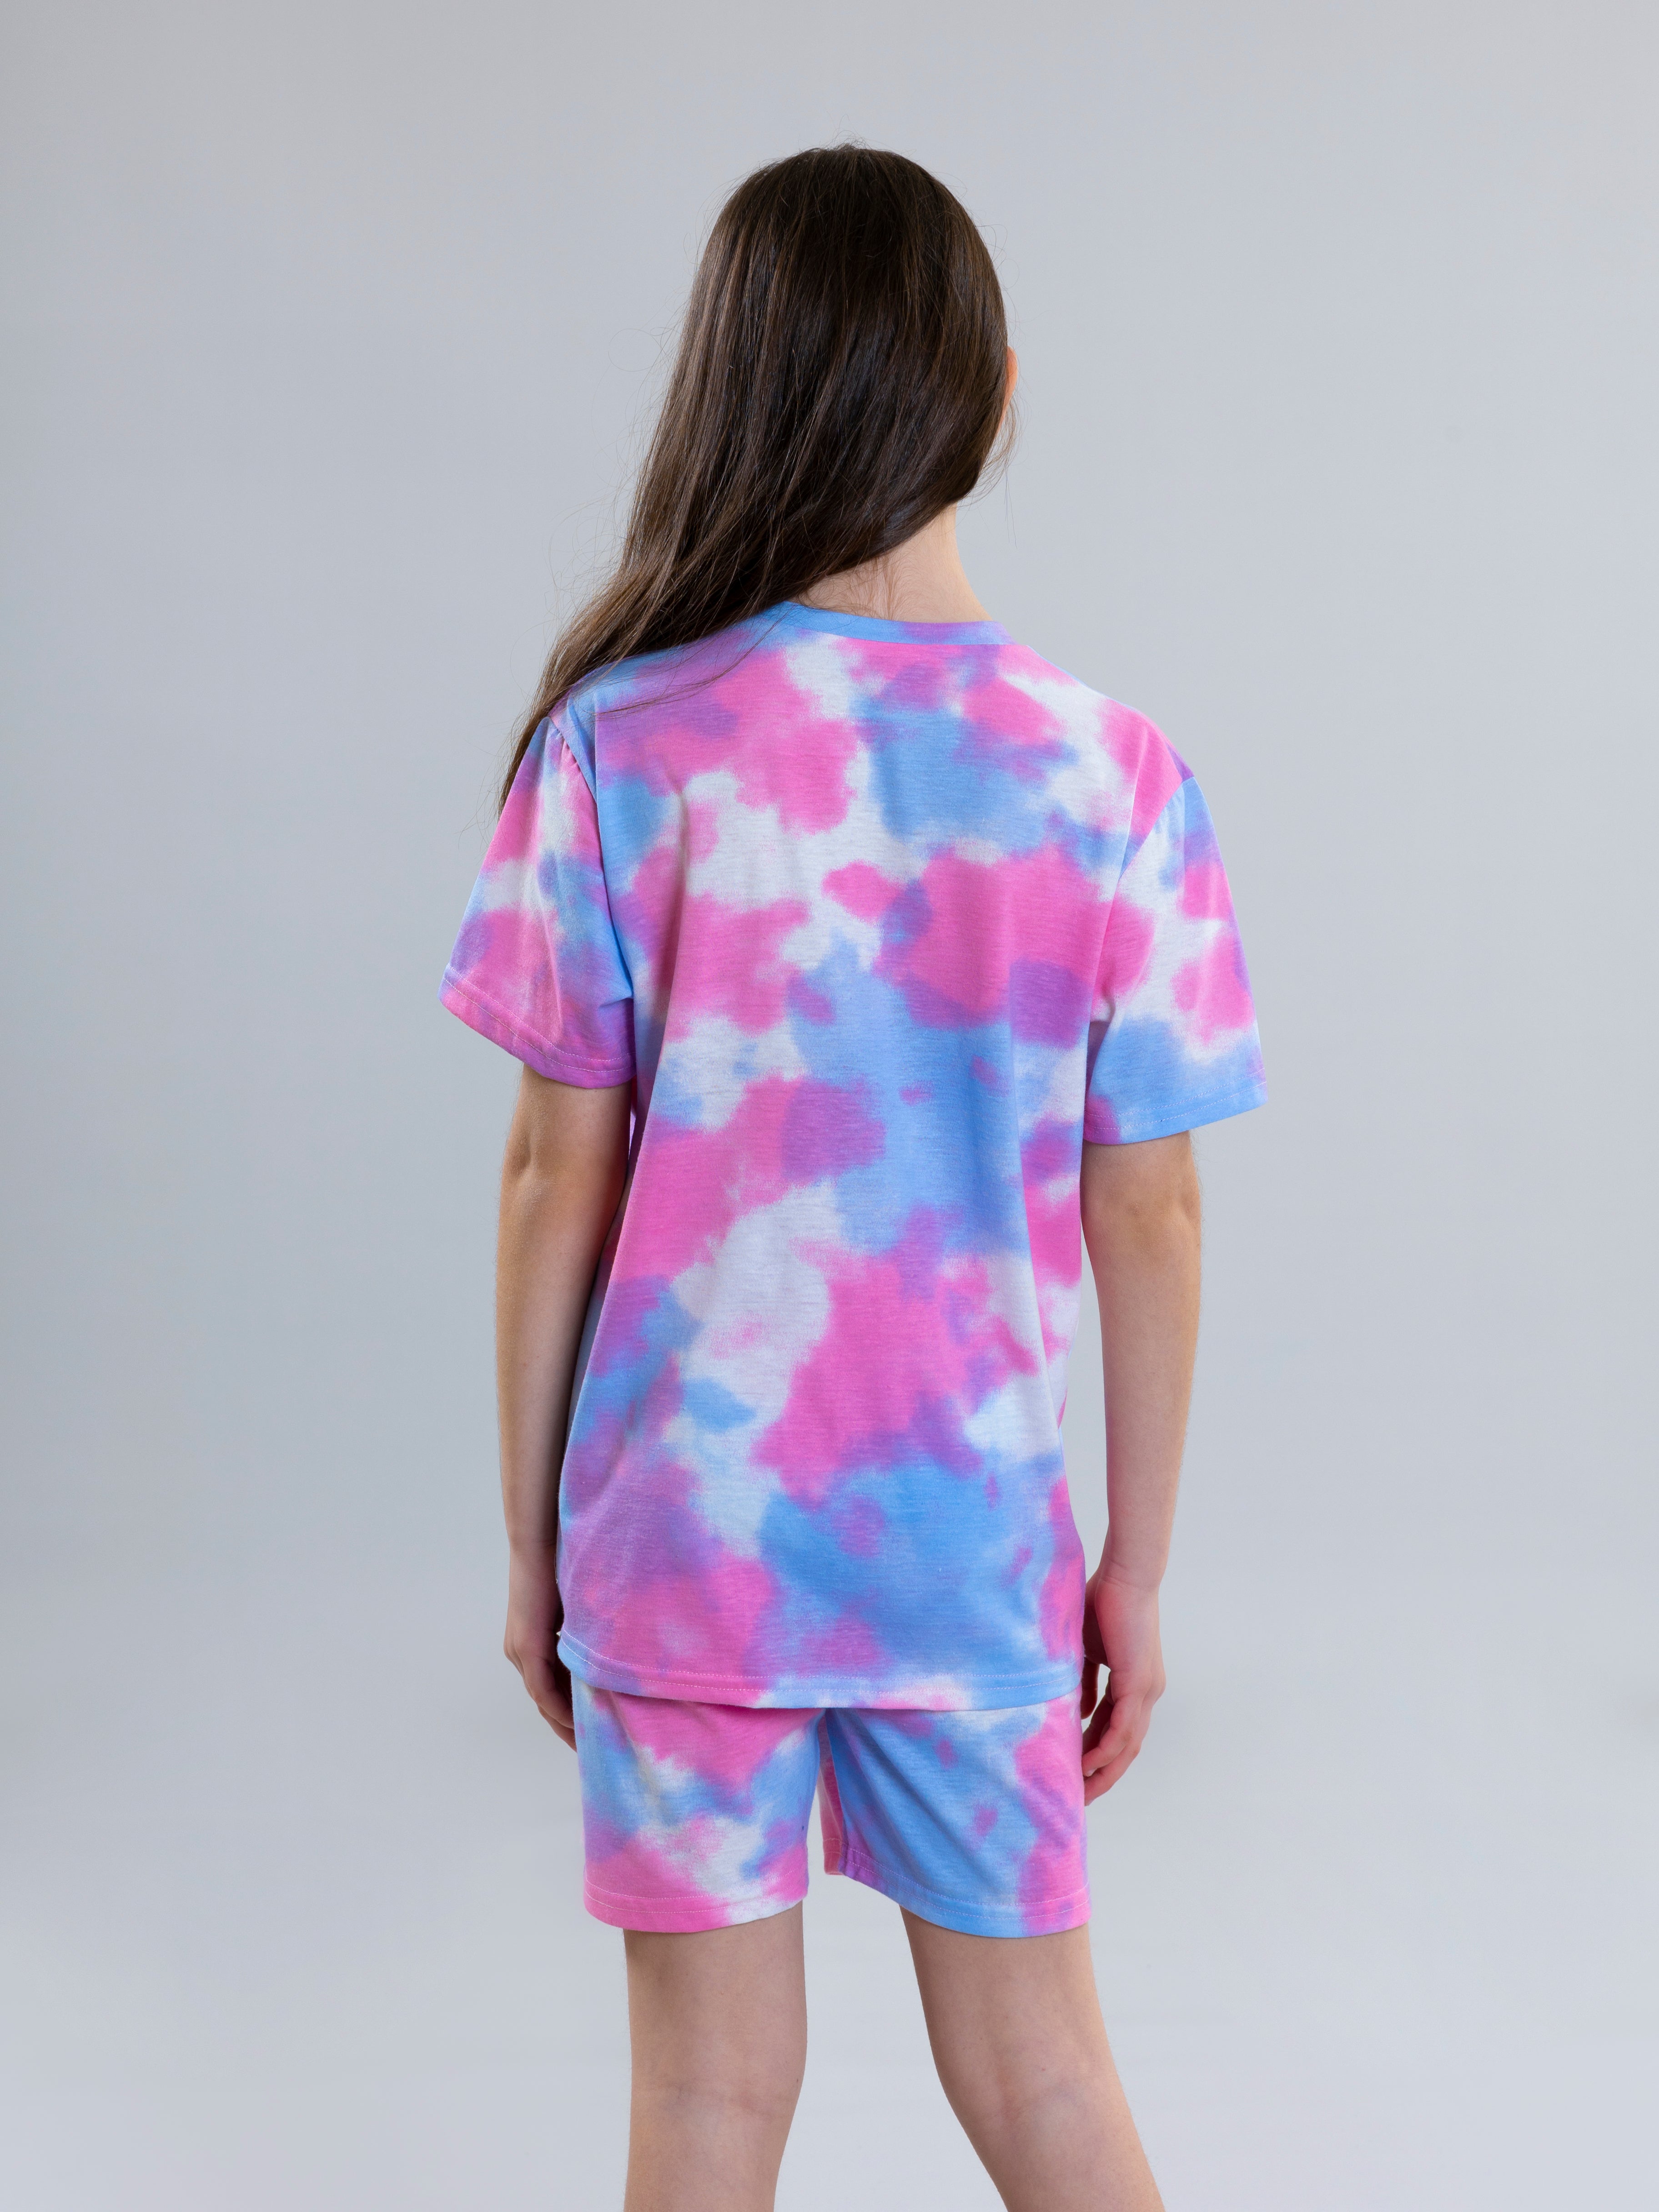 Tie Dye Pyjama Set For Girls - Pink